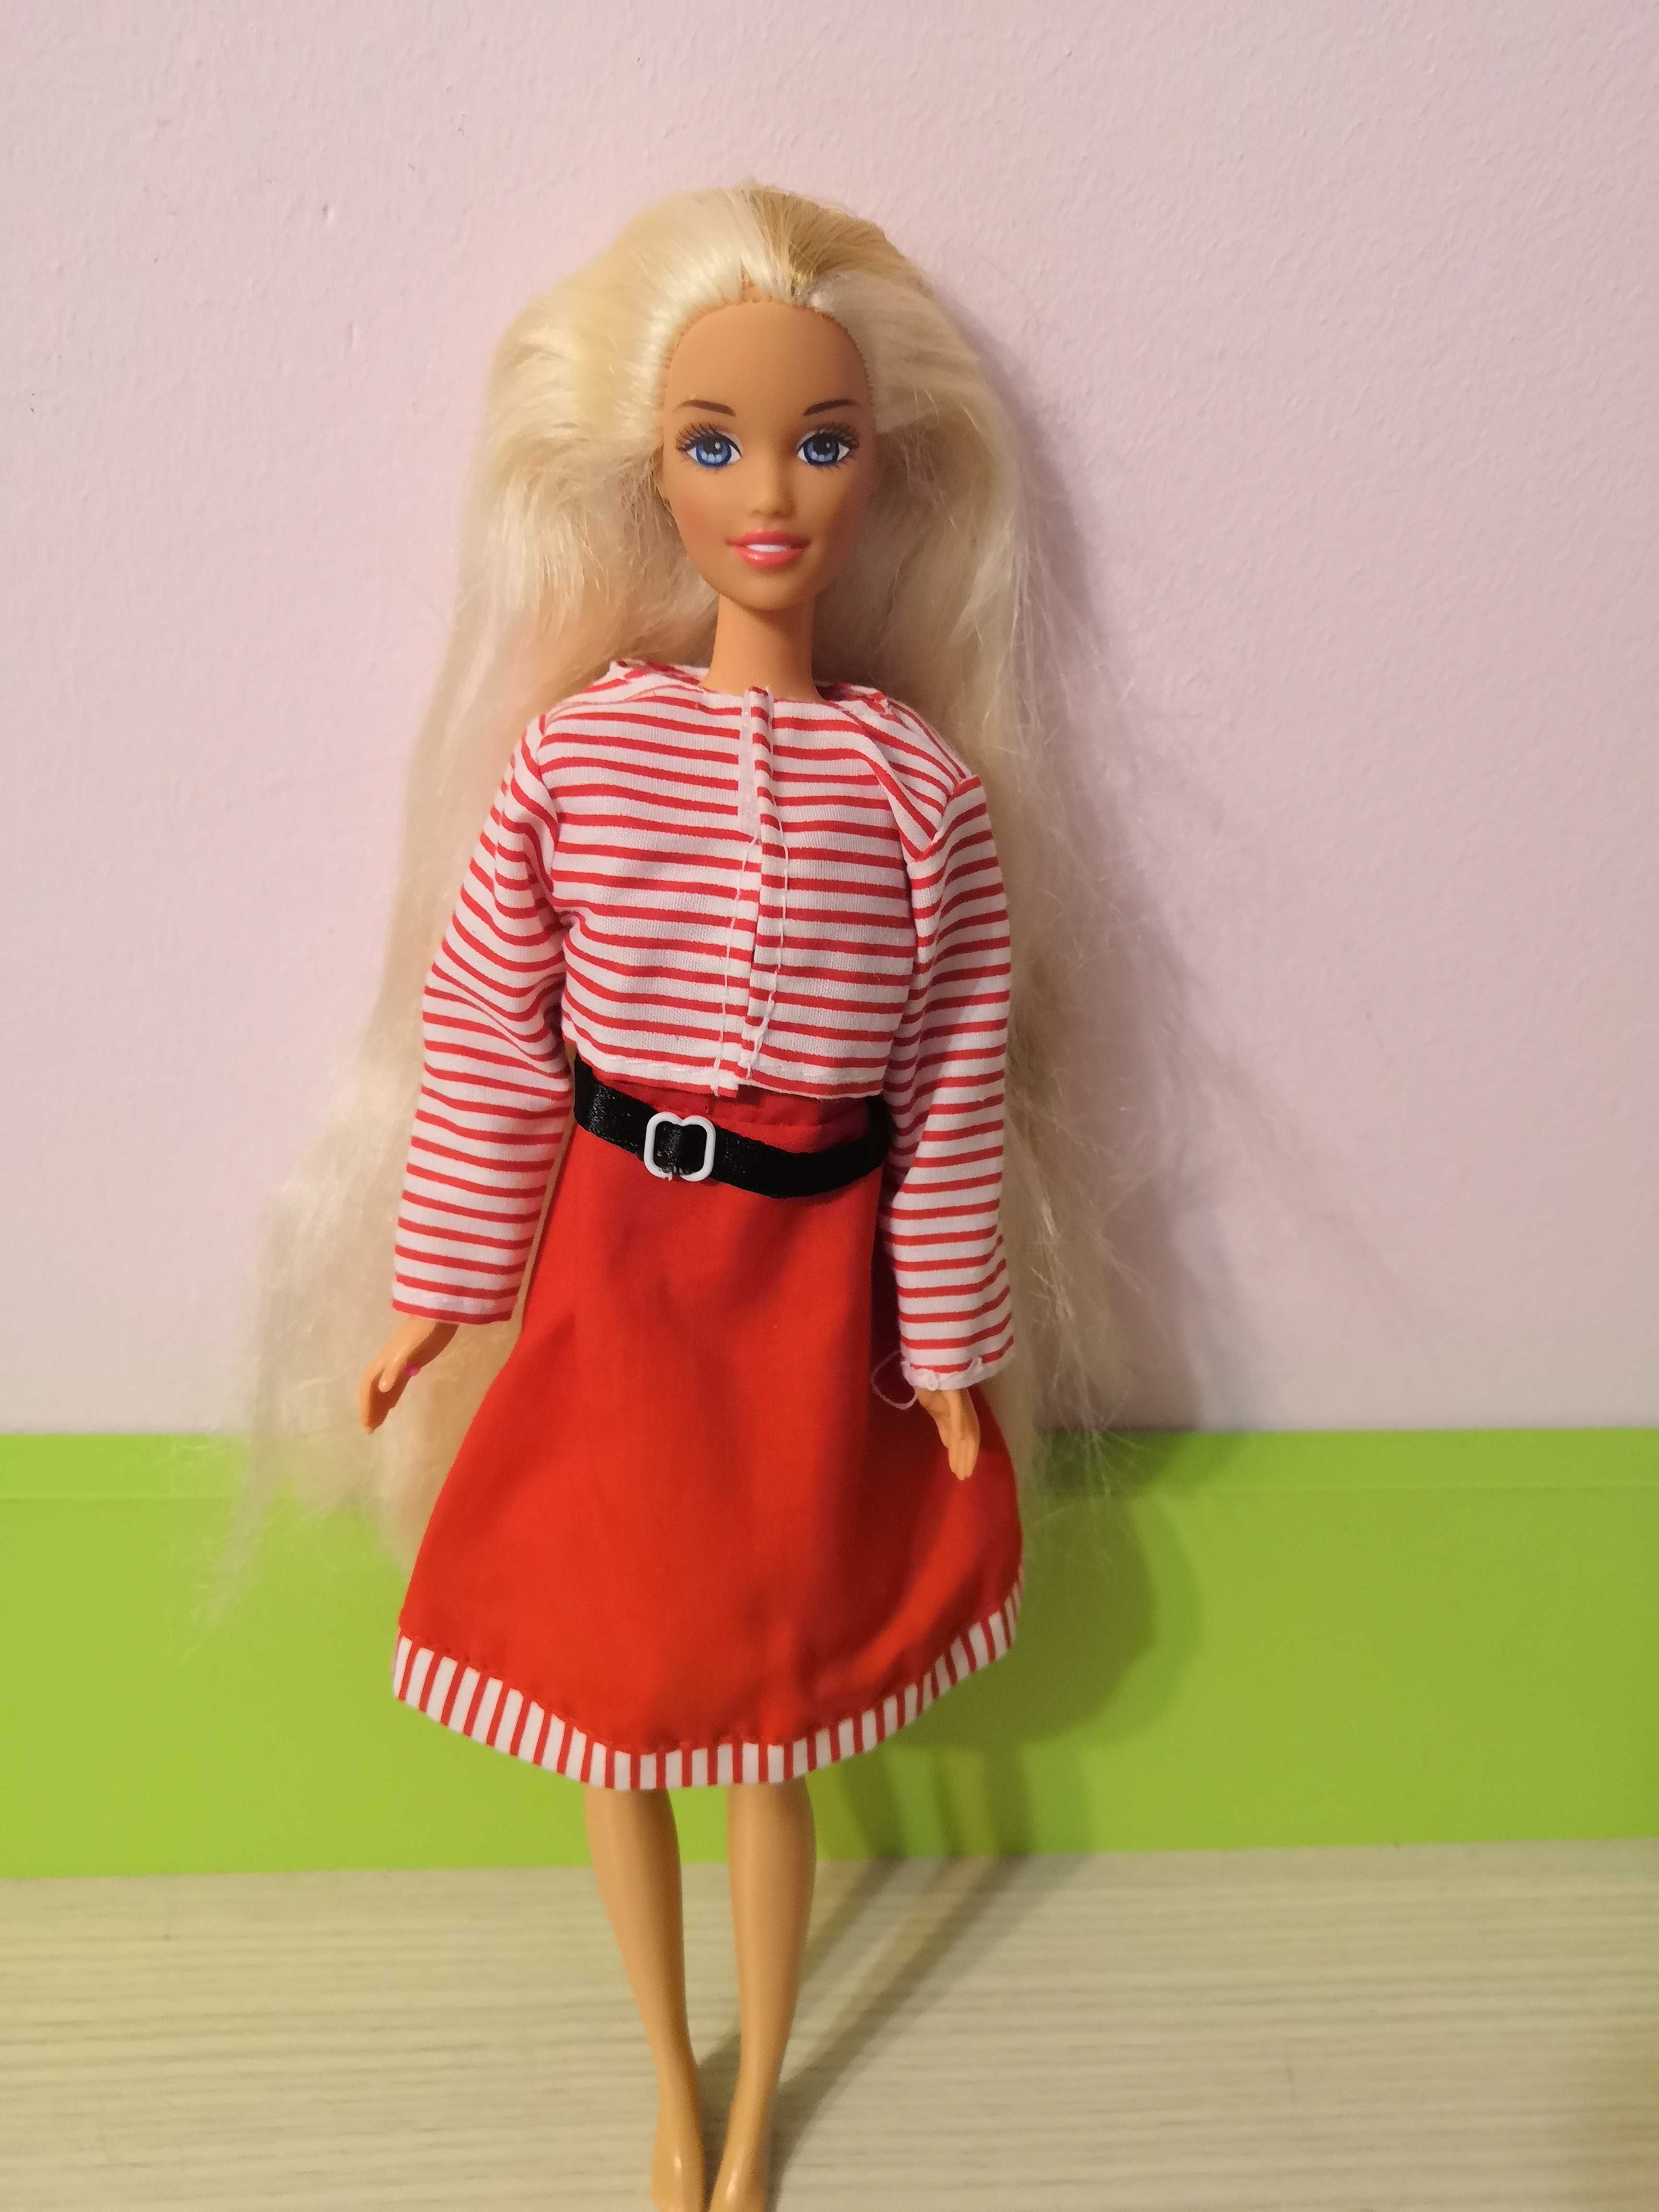 Lalka Barbie blondynka